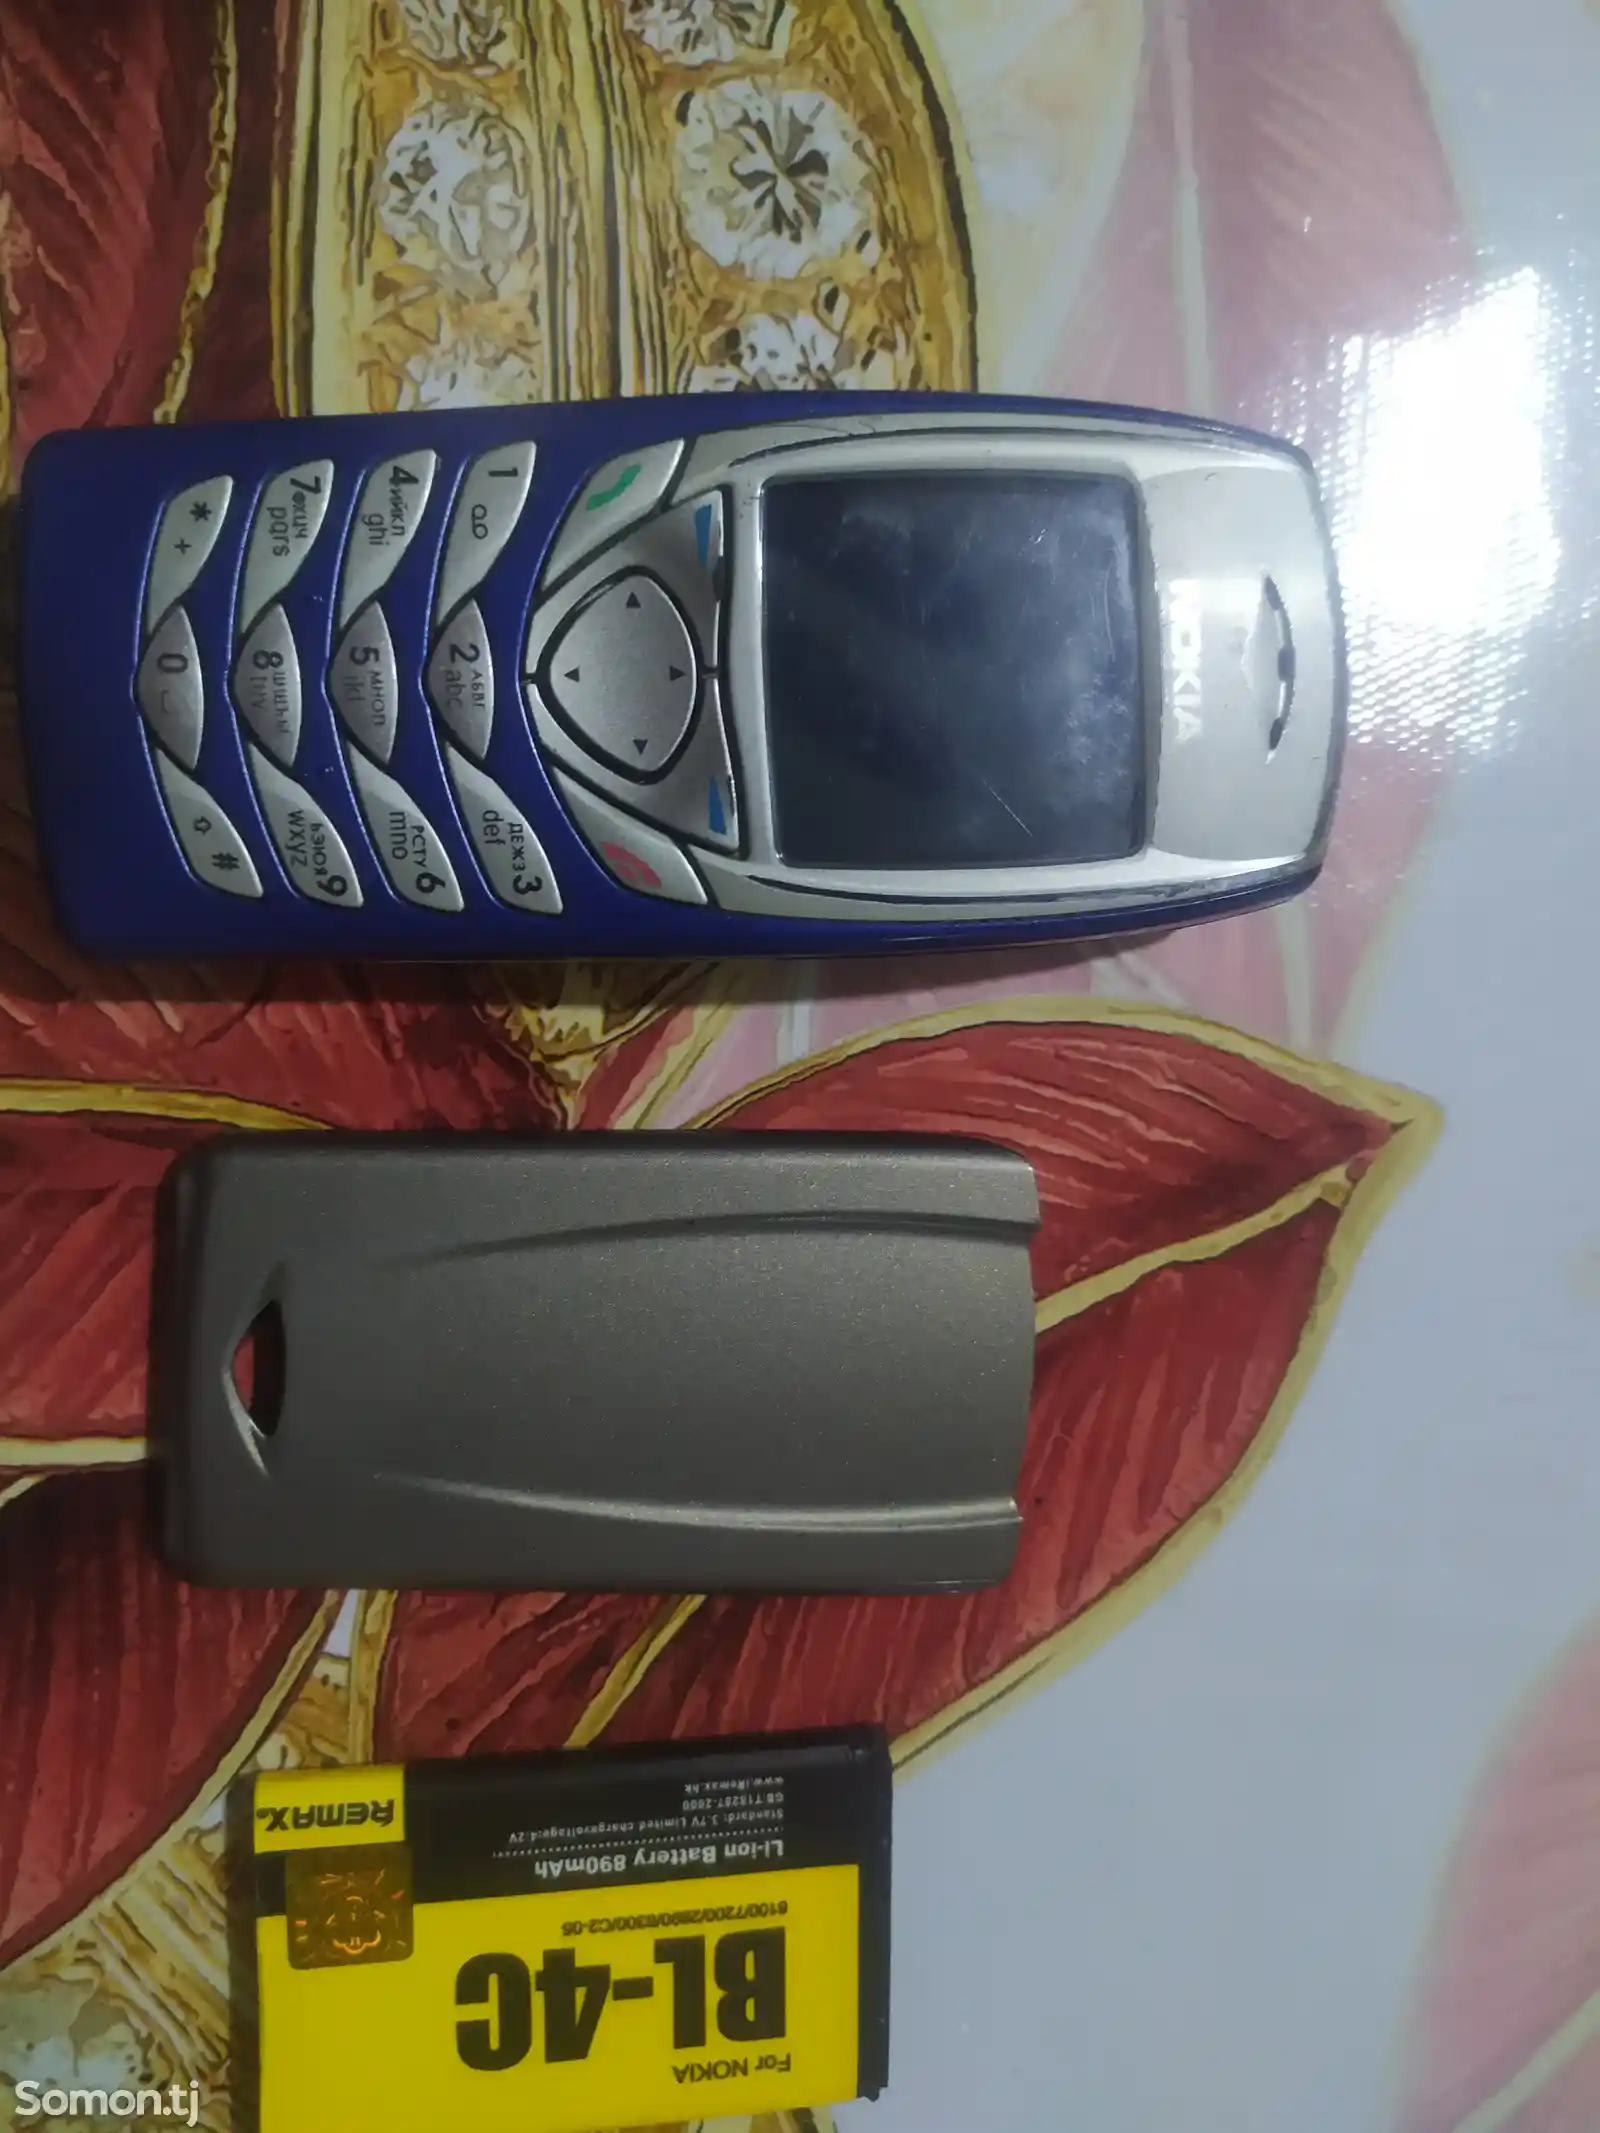 Nokia 6100-2